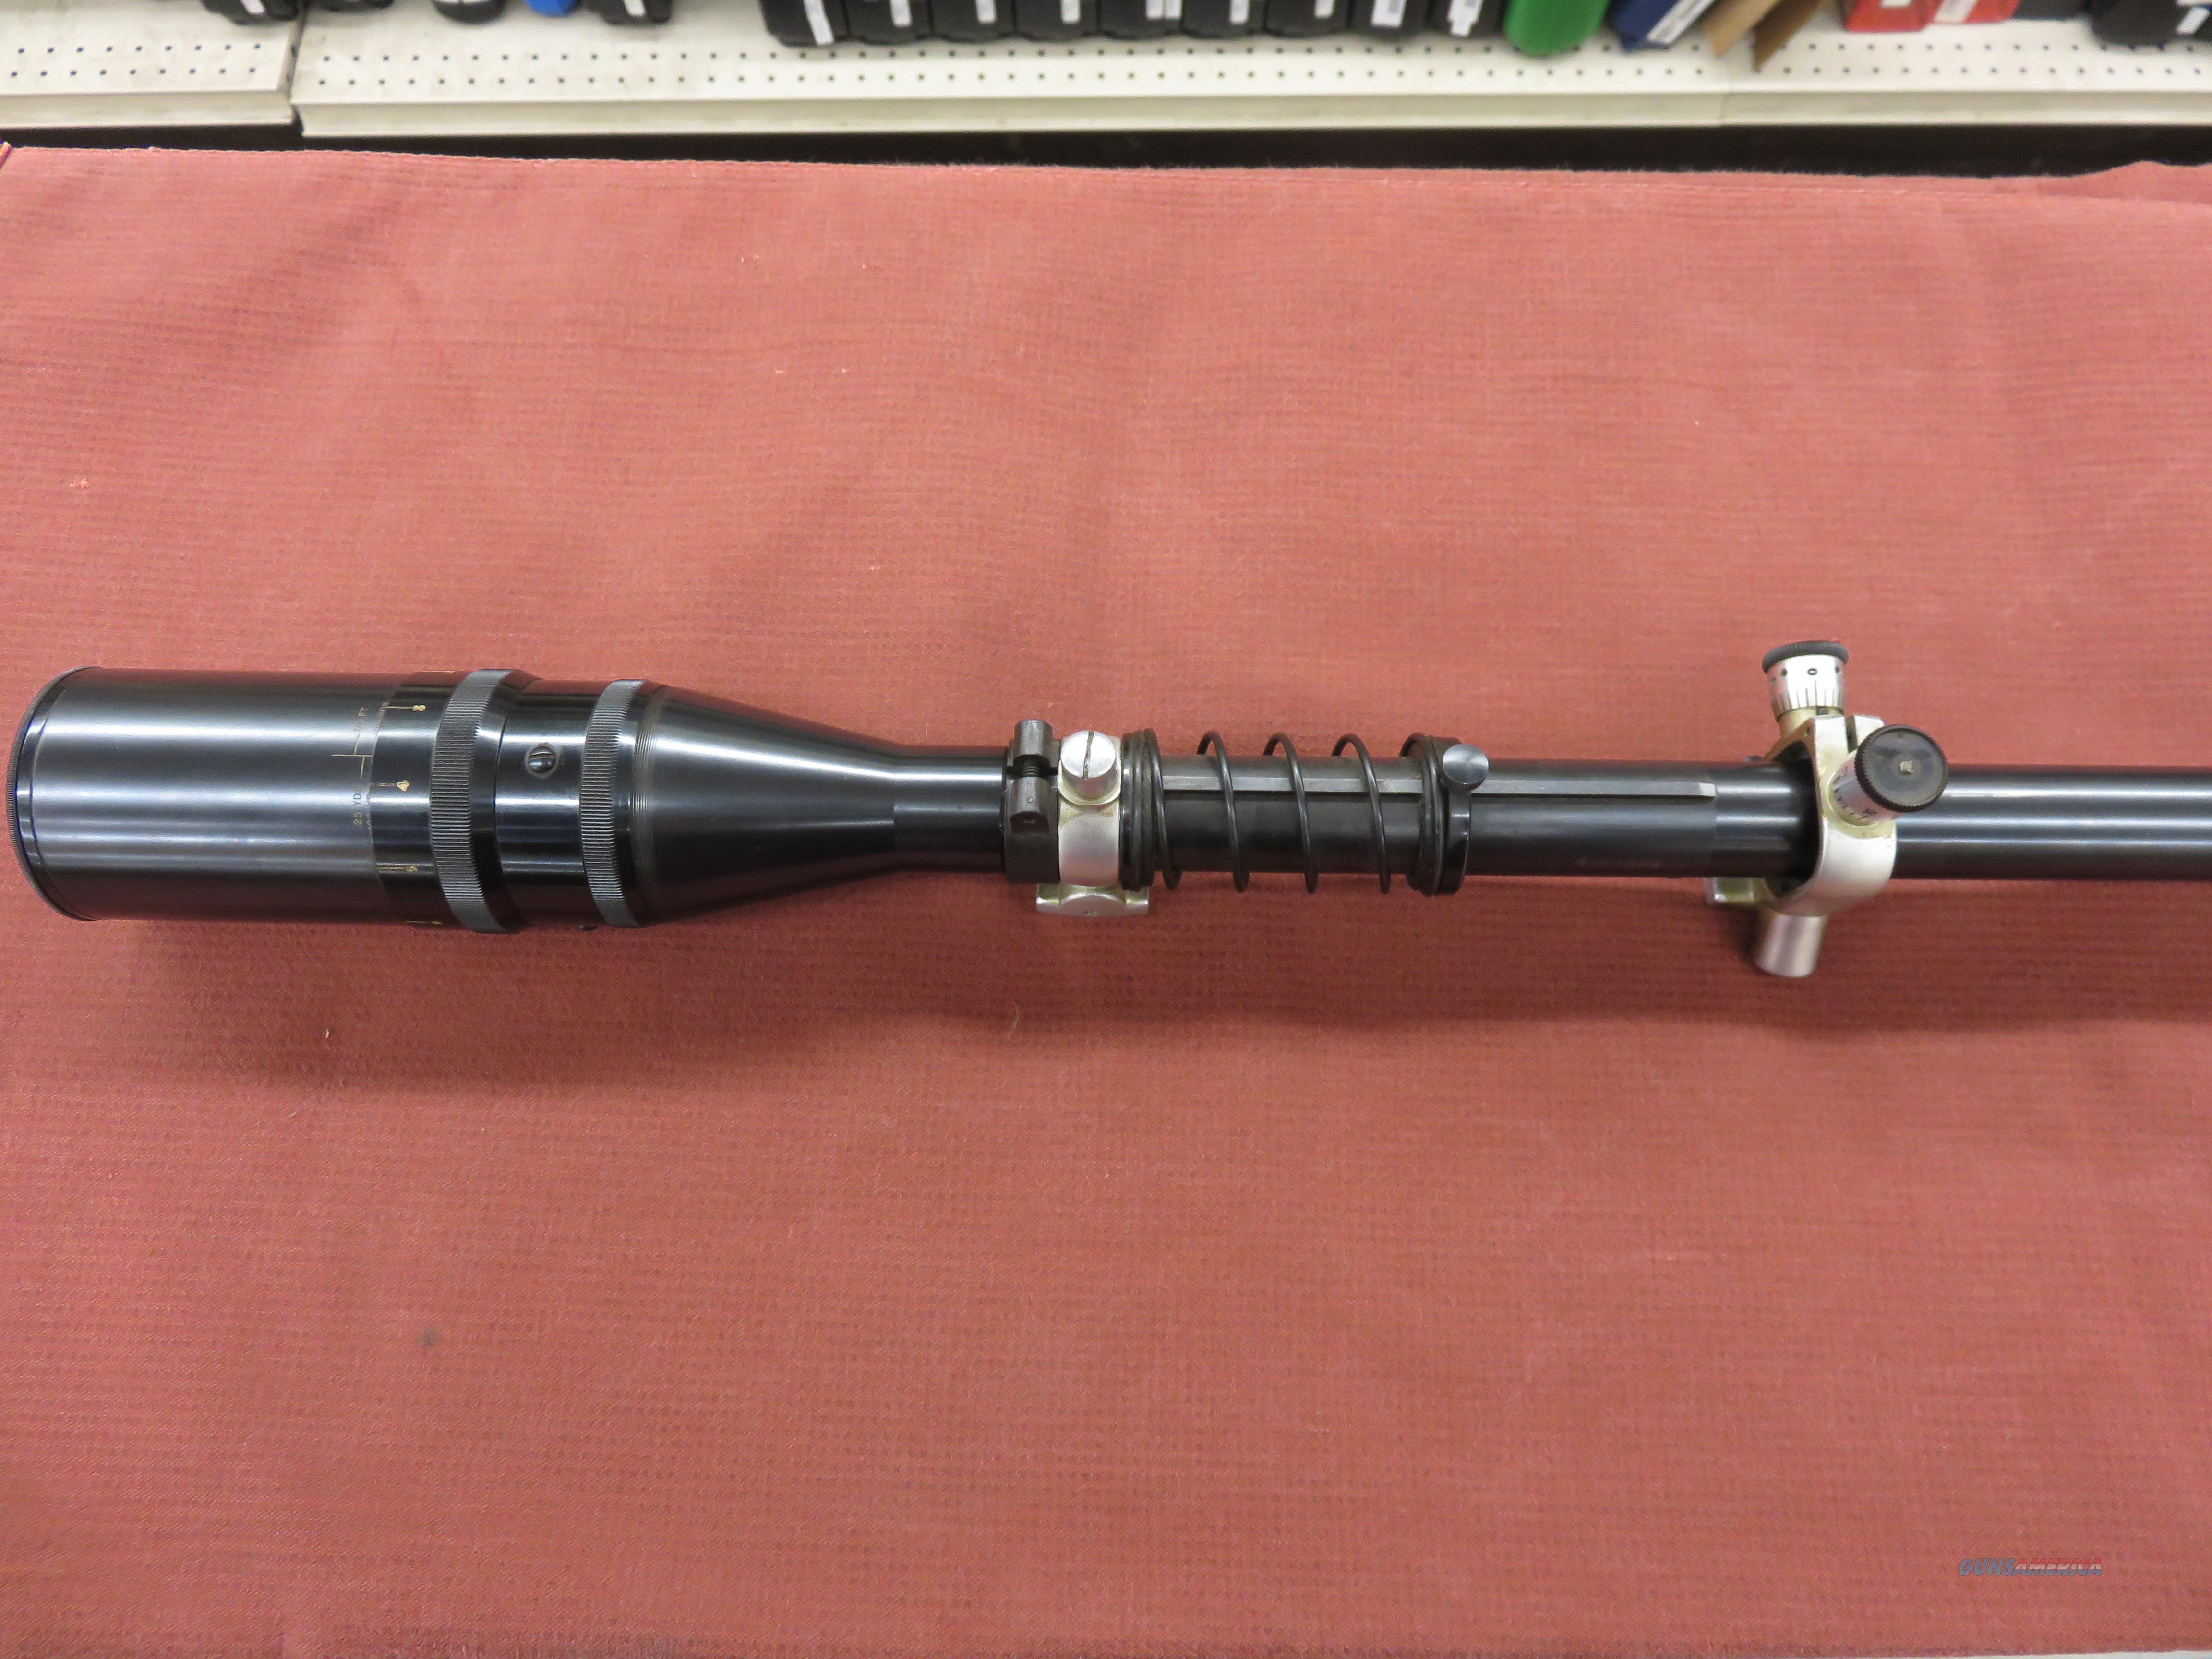 unertl rifle scope repair